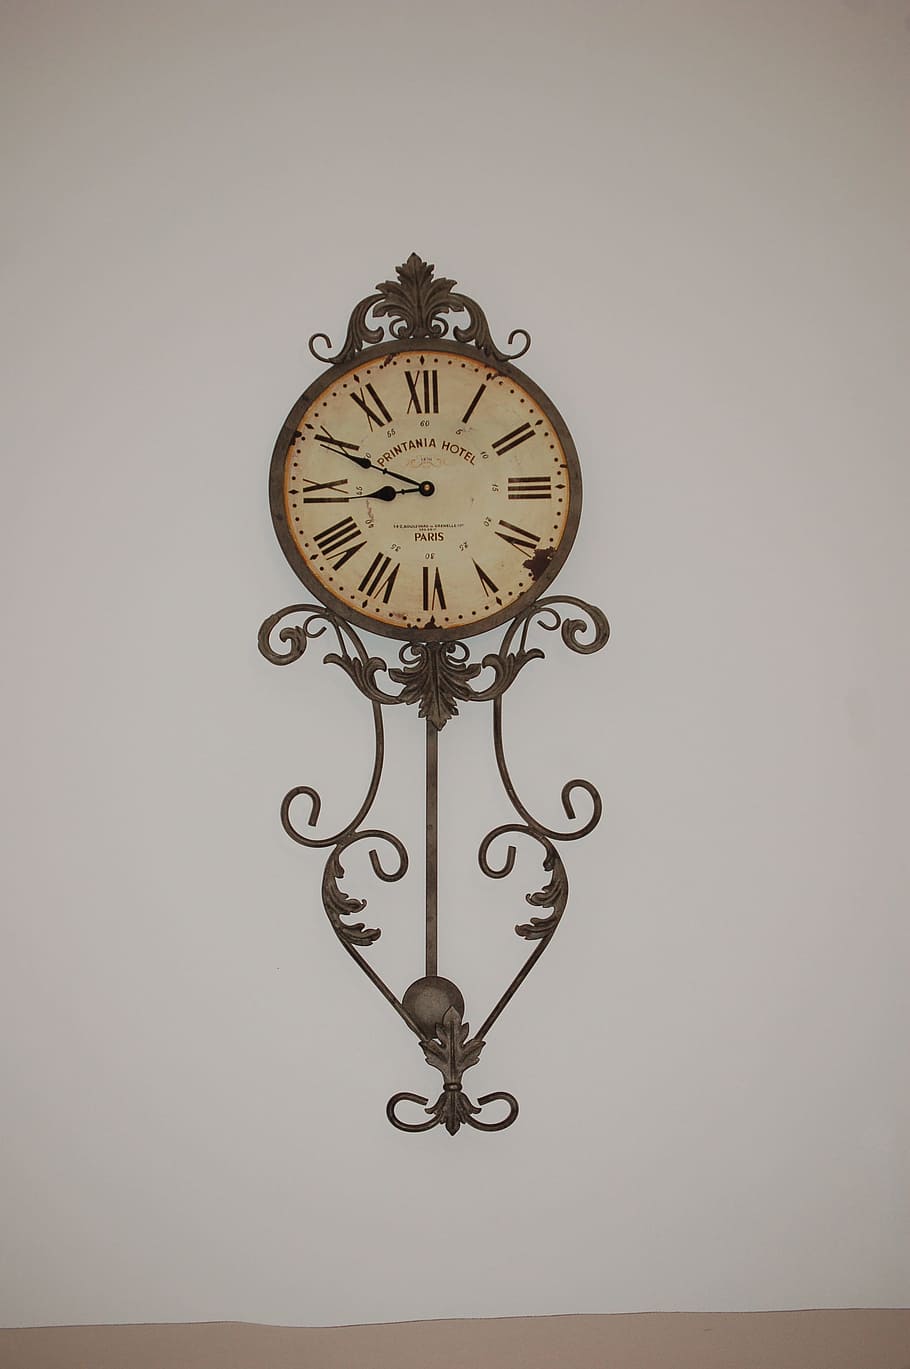 Reloj de pared, tiempo, reloj, pared, anticuado, antiguo, esfera del reloj, estilo retro, manecilla de minutos, clásico